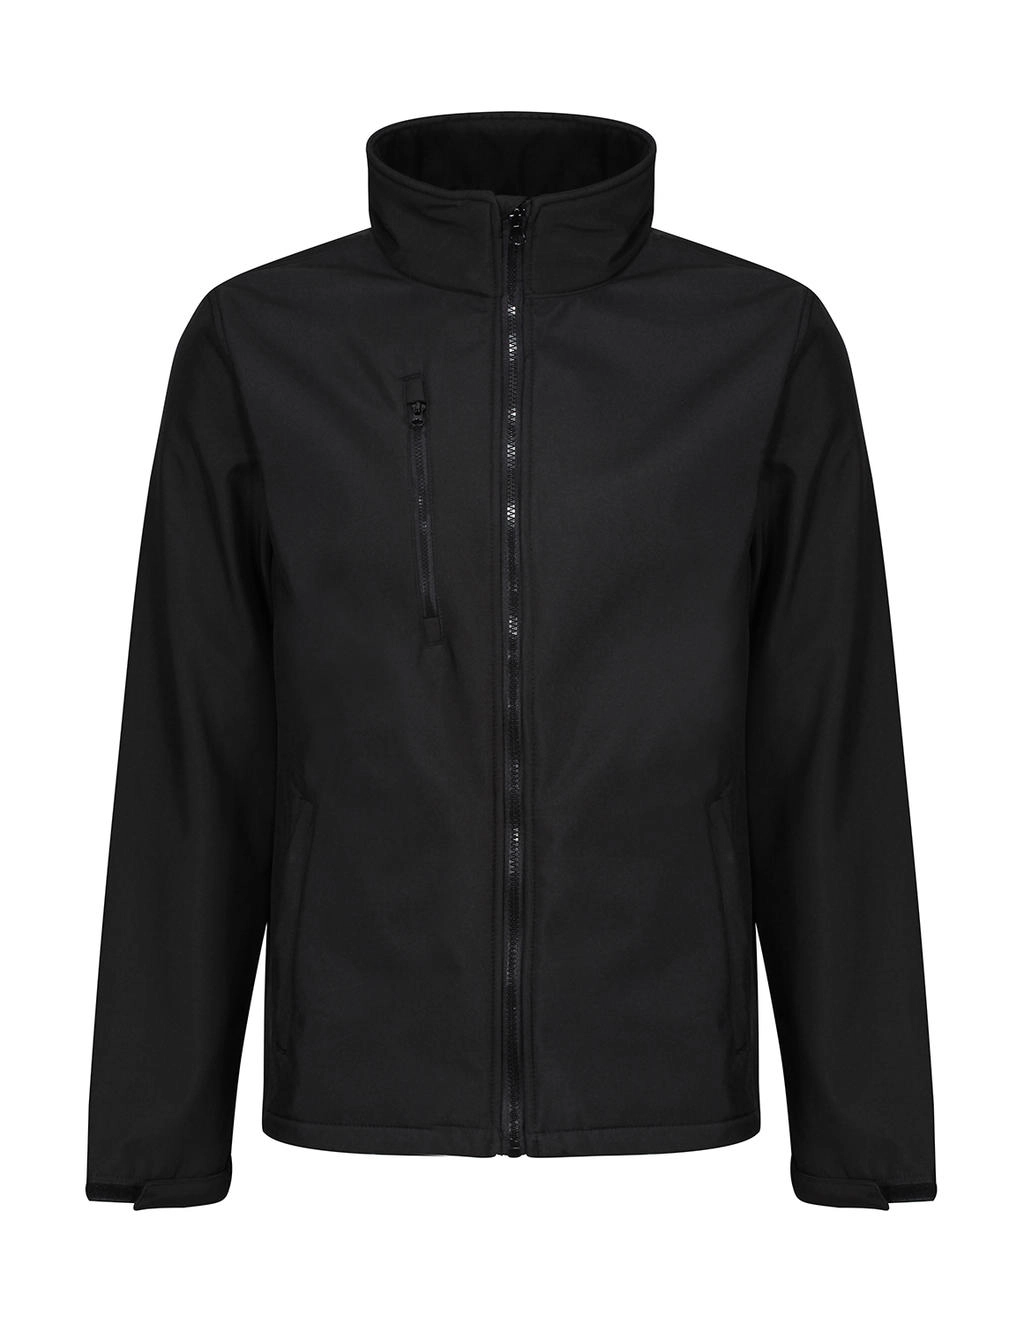 Ablaze 3 Layer Softshell Jacket zum Besticken und Bedrucken in der Farbe Black/Black mit Ihren Logo, Schriftzug oder Motiv.